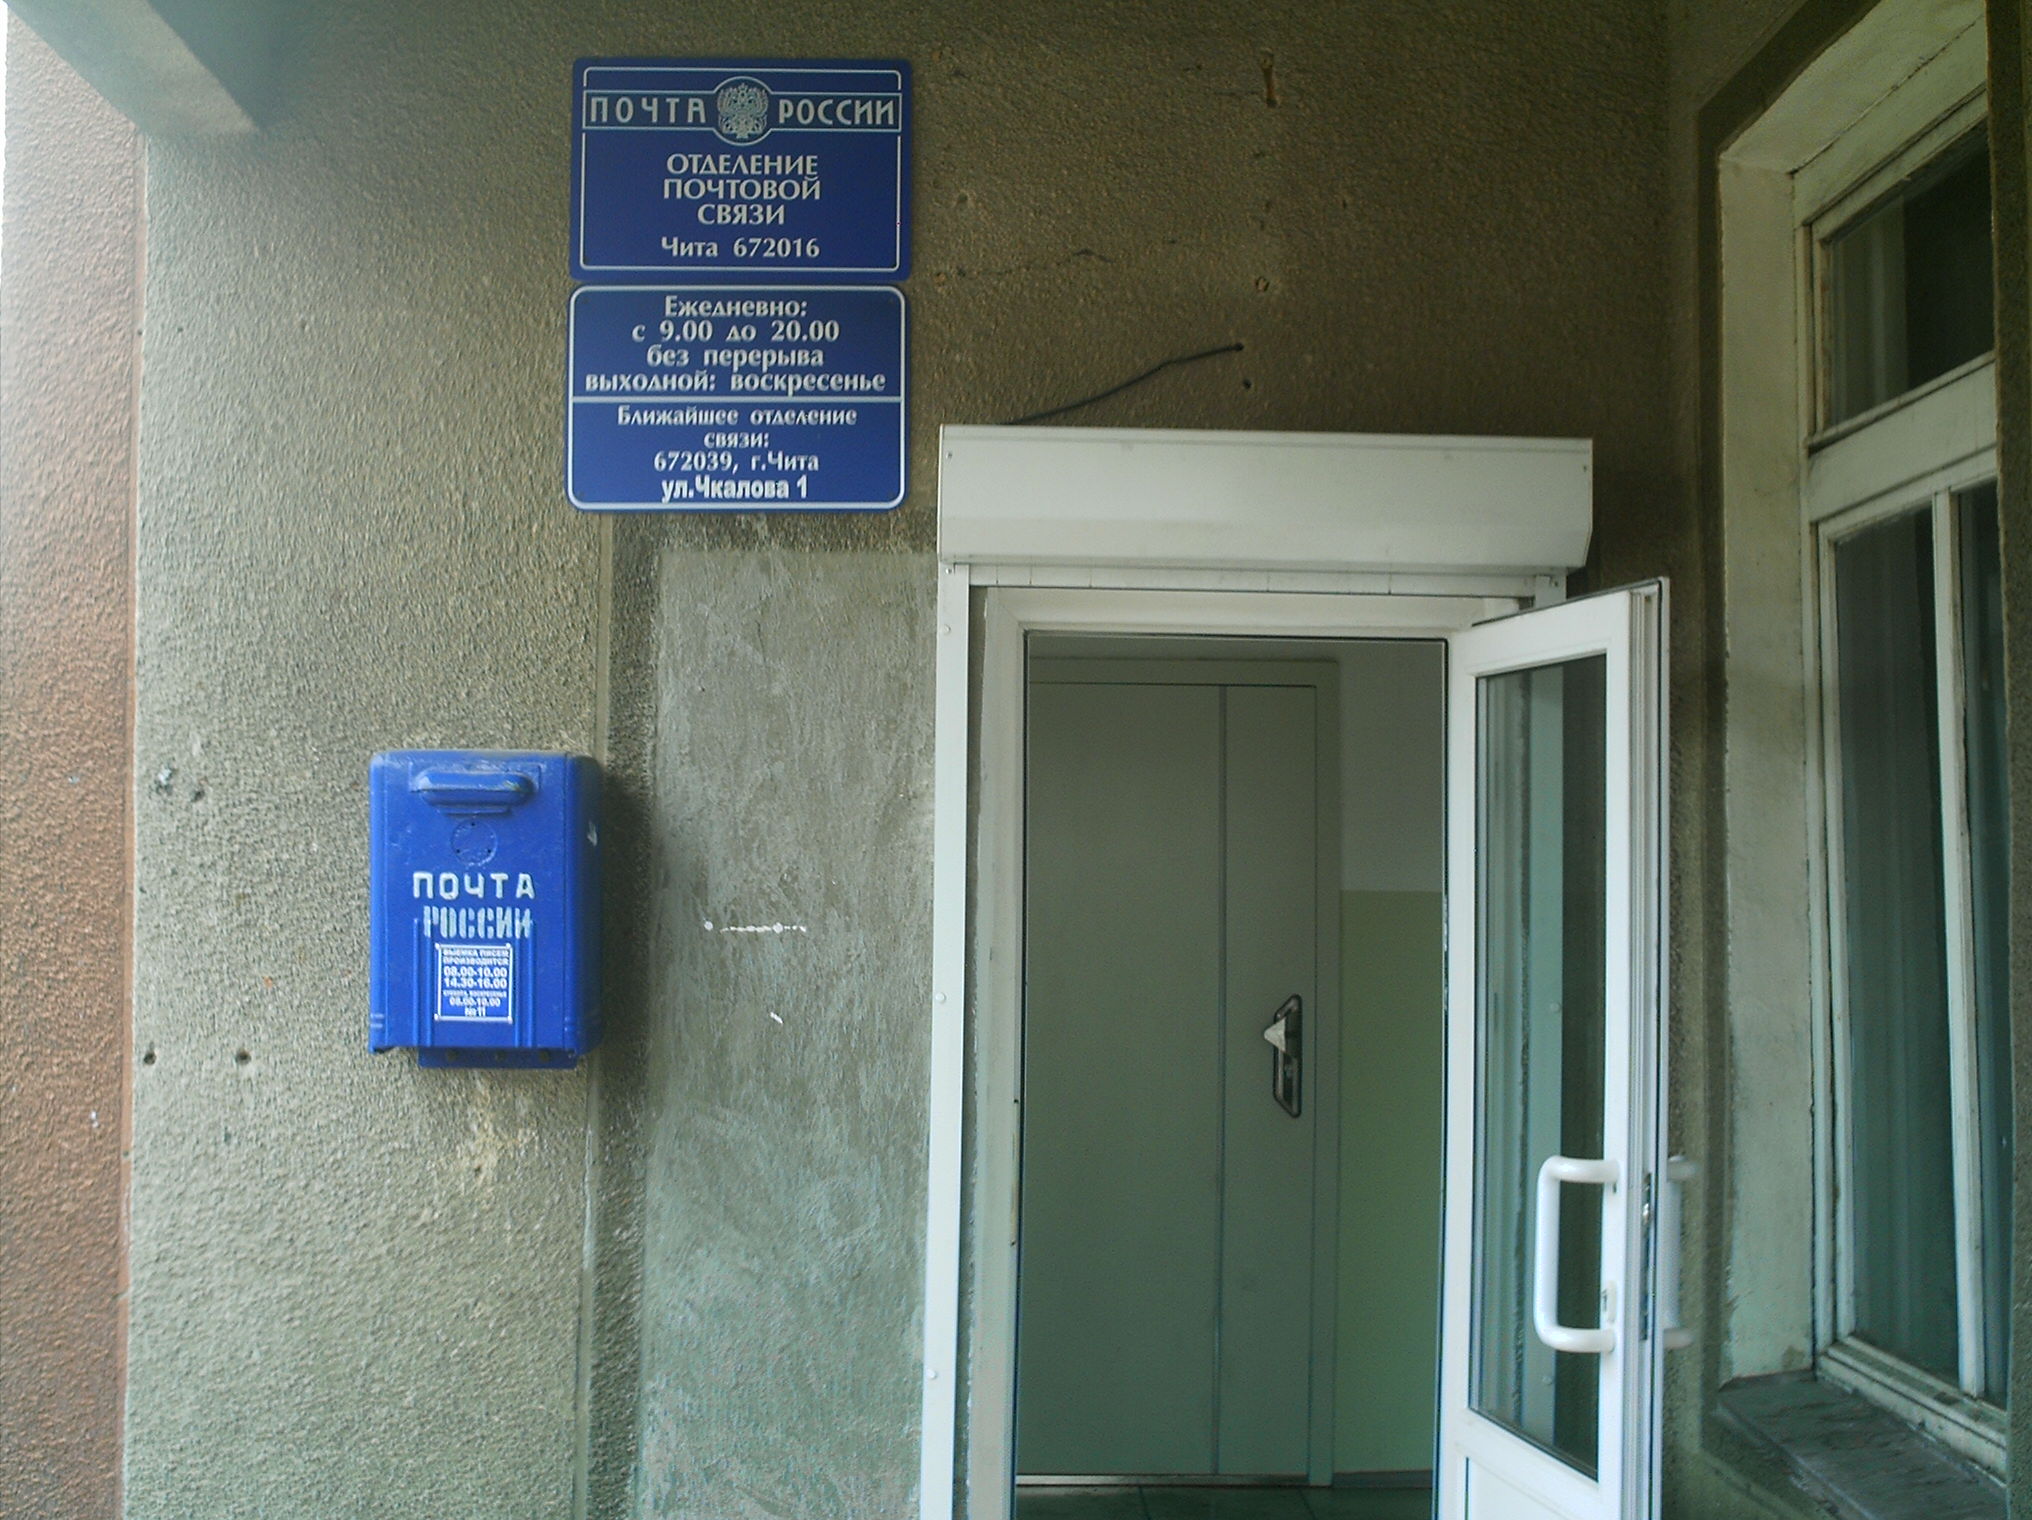 ВХОД, отделение почтовой связи 672016, Забайкальский край, Чита